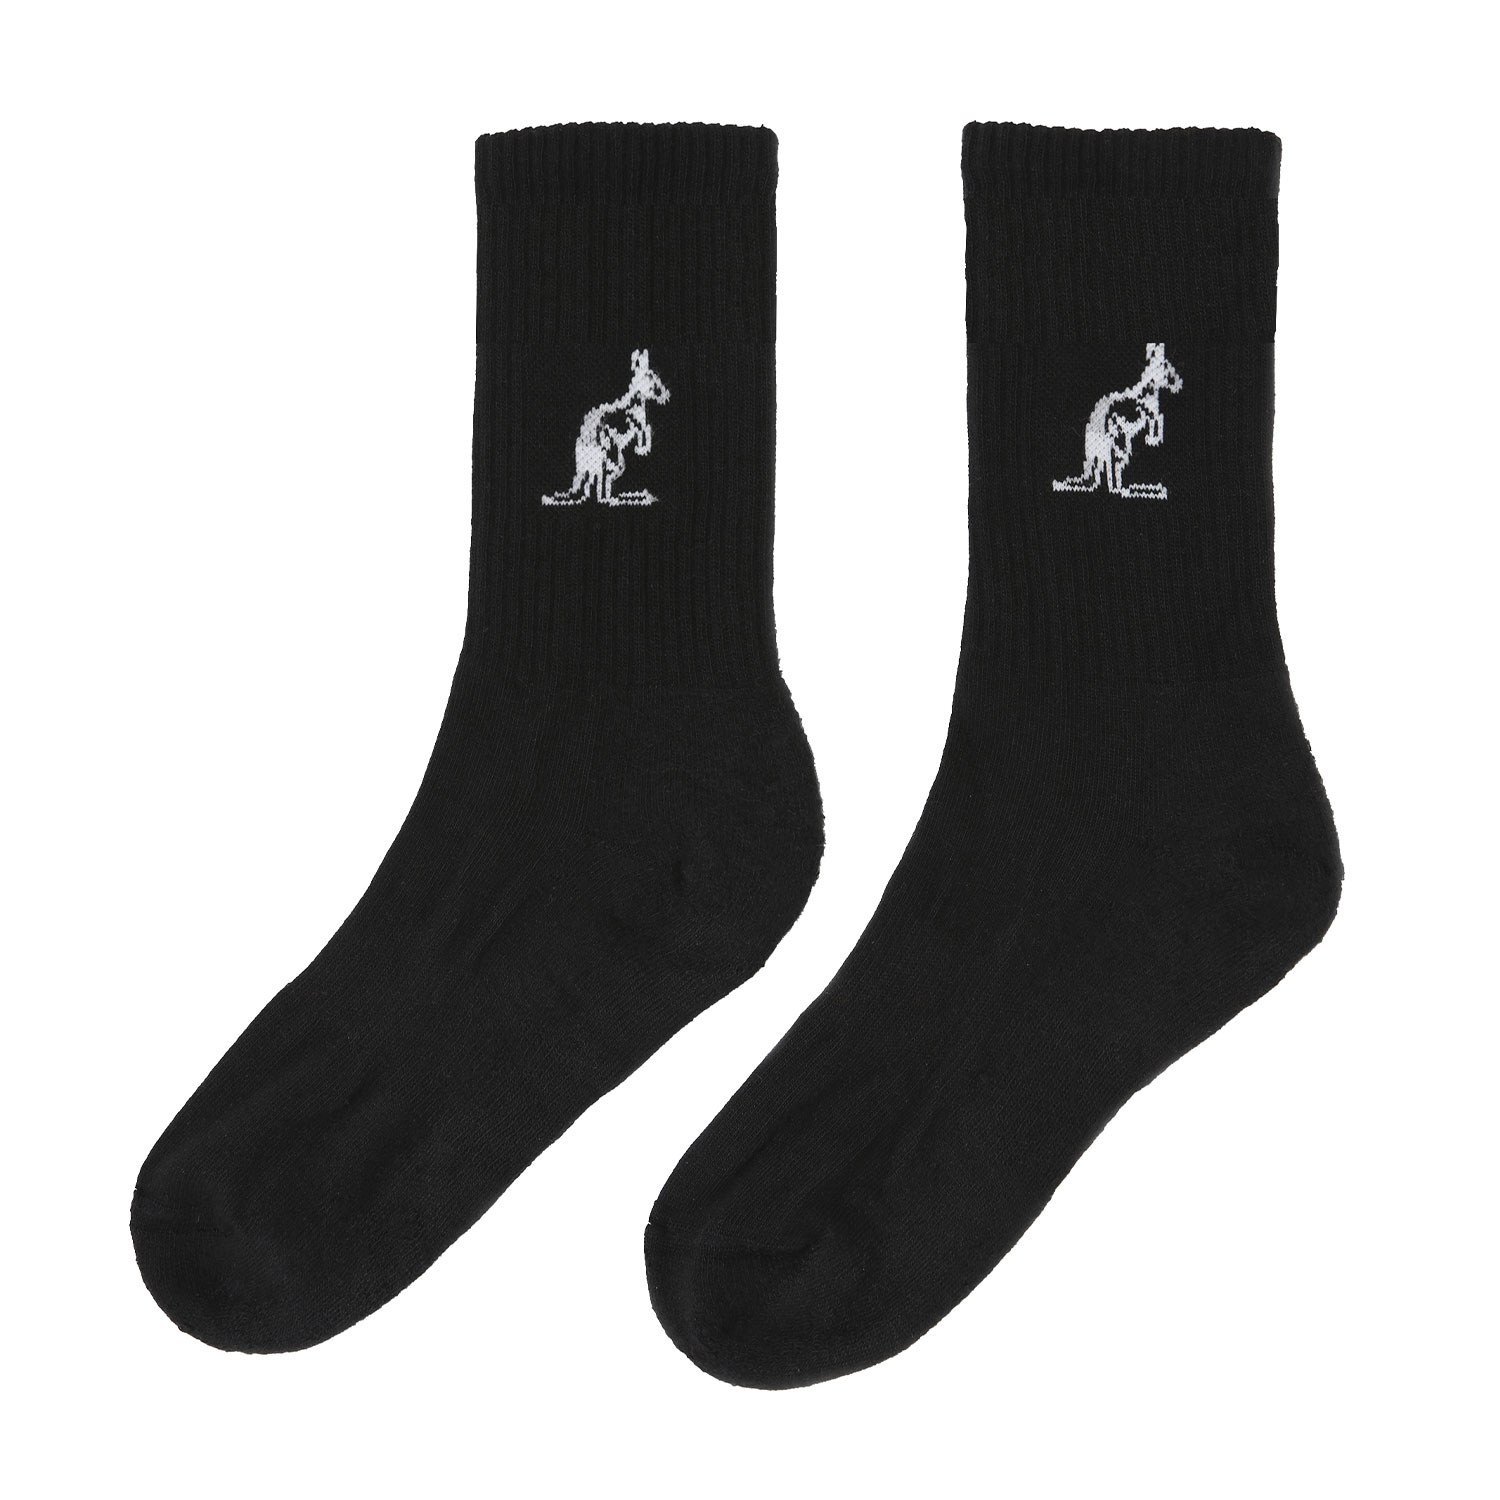 Australian Special Edition Socks - Black